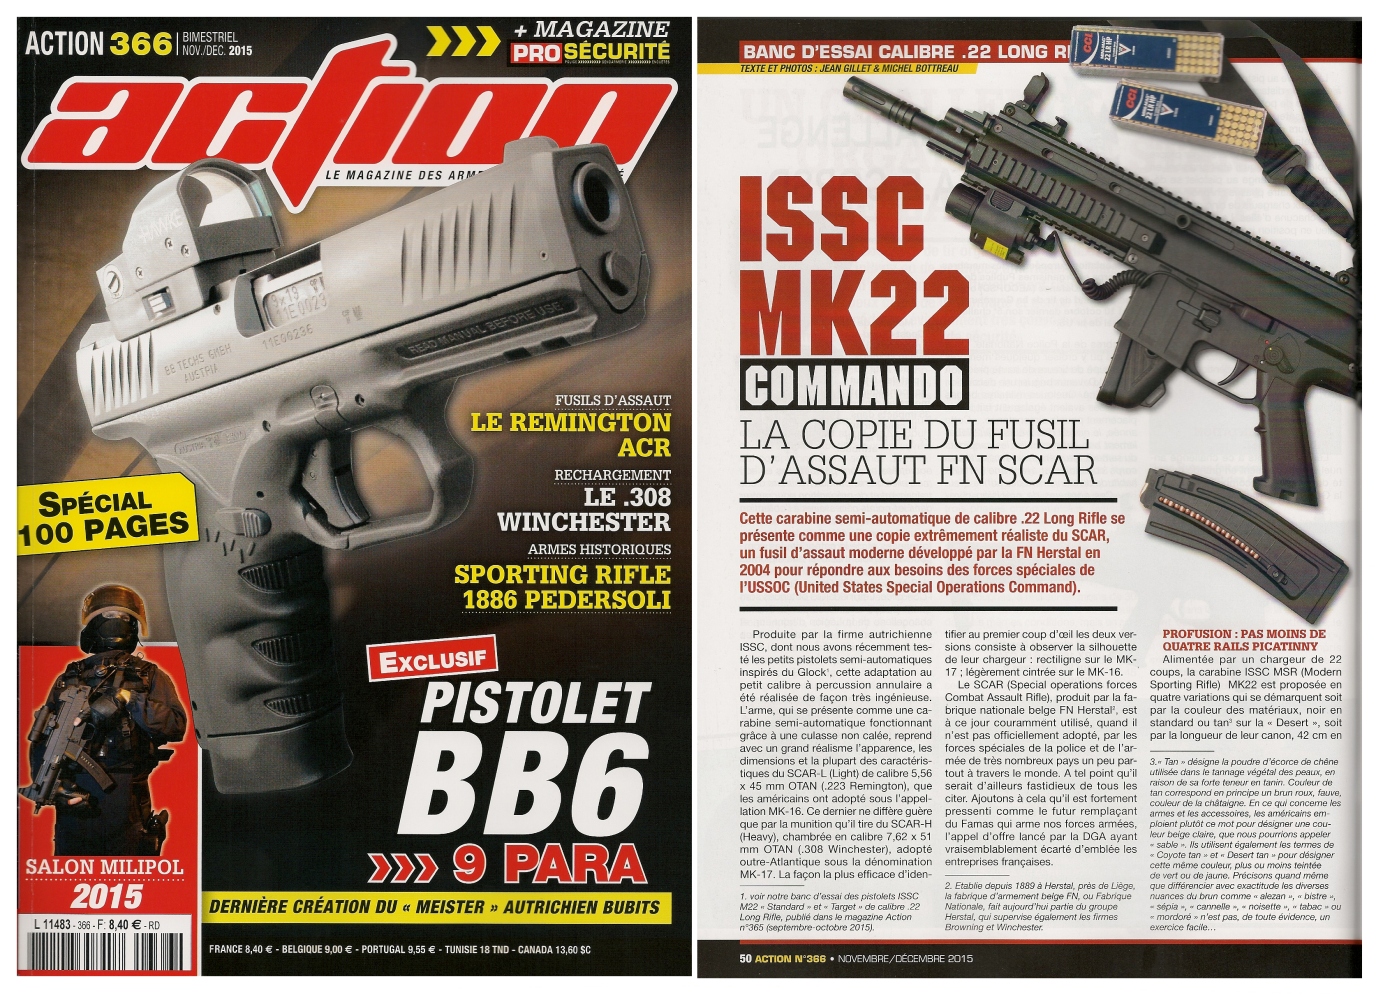 Le banc d'essai de la carabine ISSC MK22 Commando a été publié sur 6 pages dans le magazine Action n°366 (novembre-décembre 2015). 